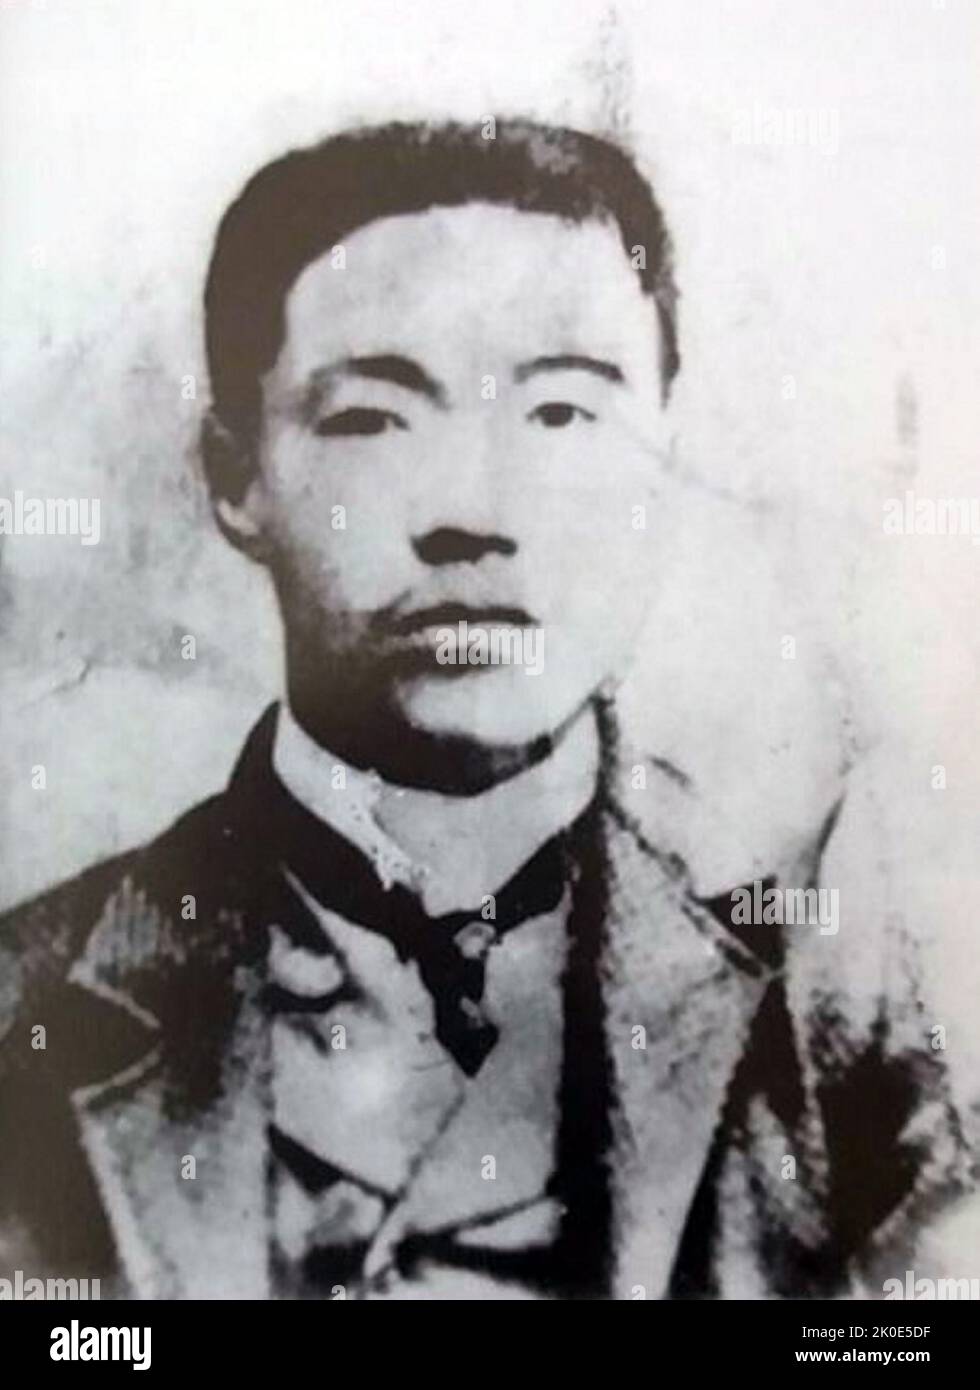 Ein Jung-geun, (1879 - 1910), koreanischer Unabhängigkeitsaktivist und pan-asiatischer Aktivist. Am 26. Oktober 1909 ermordete er Prinz Ito Hirobumi, einen viermaligen japanischen Premierminister, einen ehemaligen Generalinsidenten Koreas und dann den Präsidenten des Geheimrats Japans, nachdem er den Eulsa-Vertrag unterzeichnet hatte, wobei Korea kurz vor der Annexion durch Japan stand. Er wurde inhaftiert und später von den japanischen Behörden am 26. März 1910 hingerichtet. Stockfoto